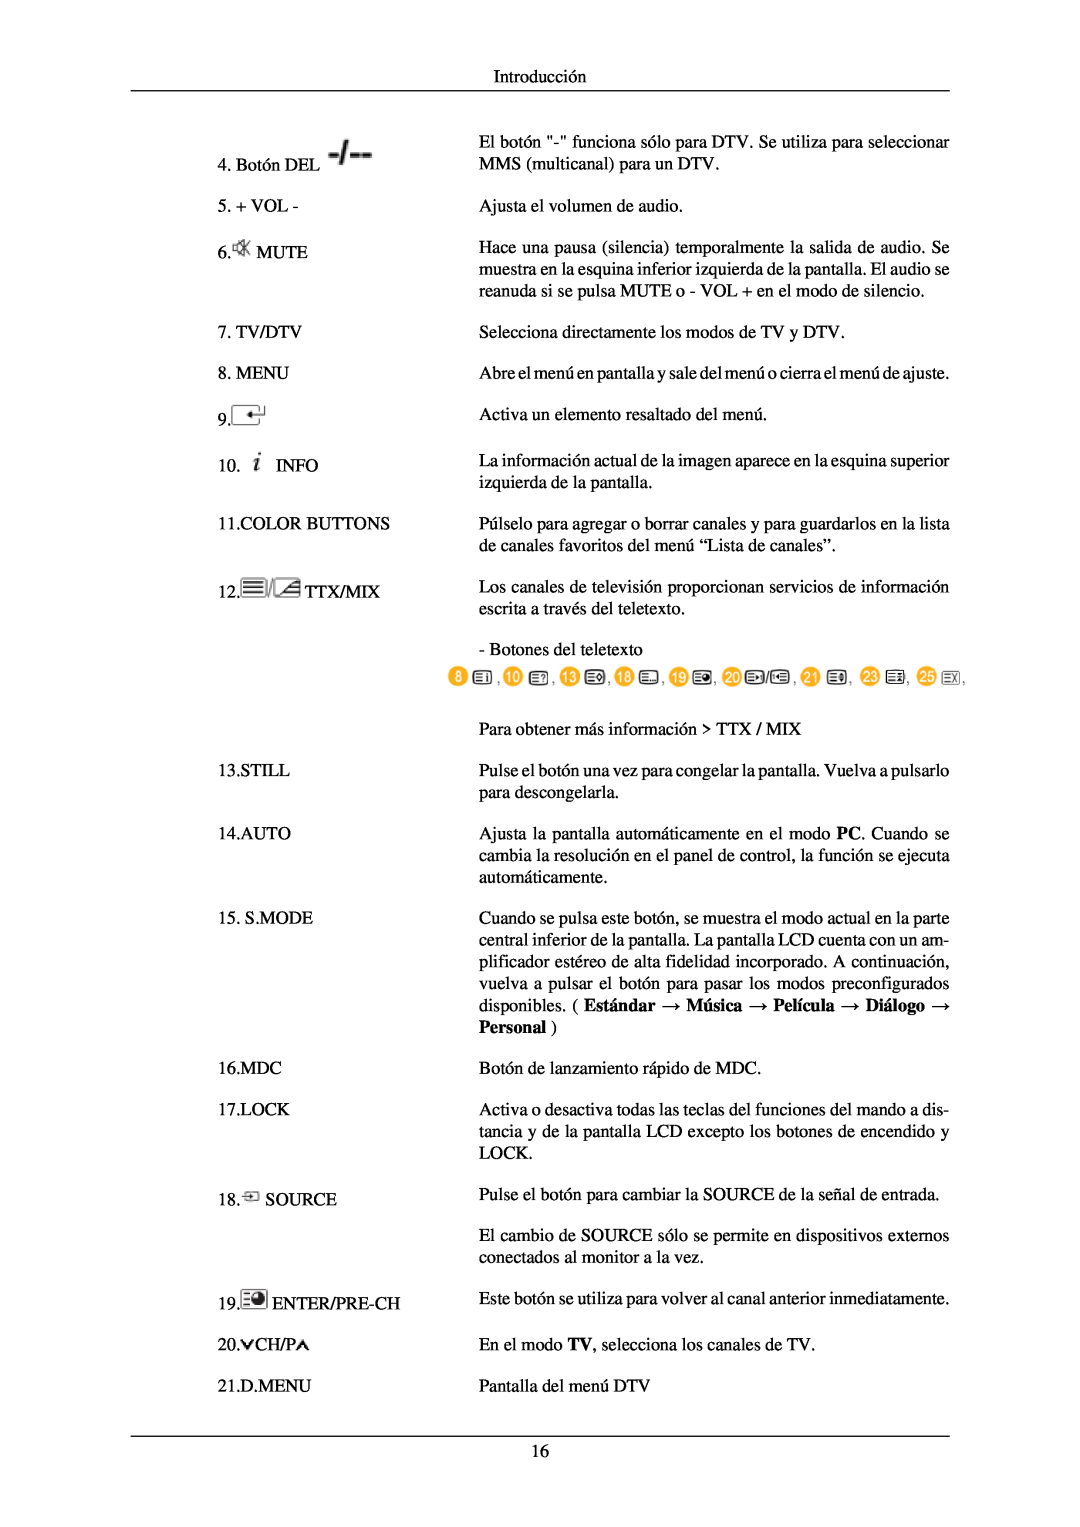 Samsung LH40TCQMBG/EN, LH40TCUMBG/EN, LH46TCUMBC/EN manual disponibles. Estándar → Música → Película → Diálogo →, Personal 